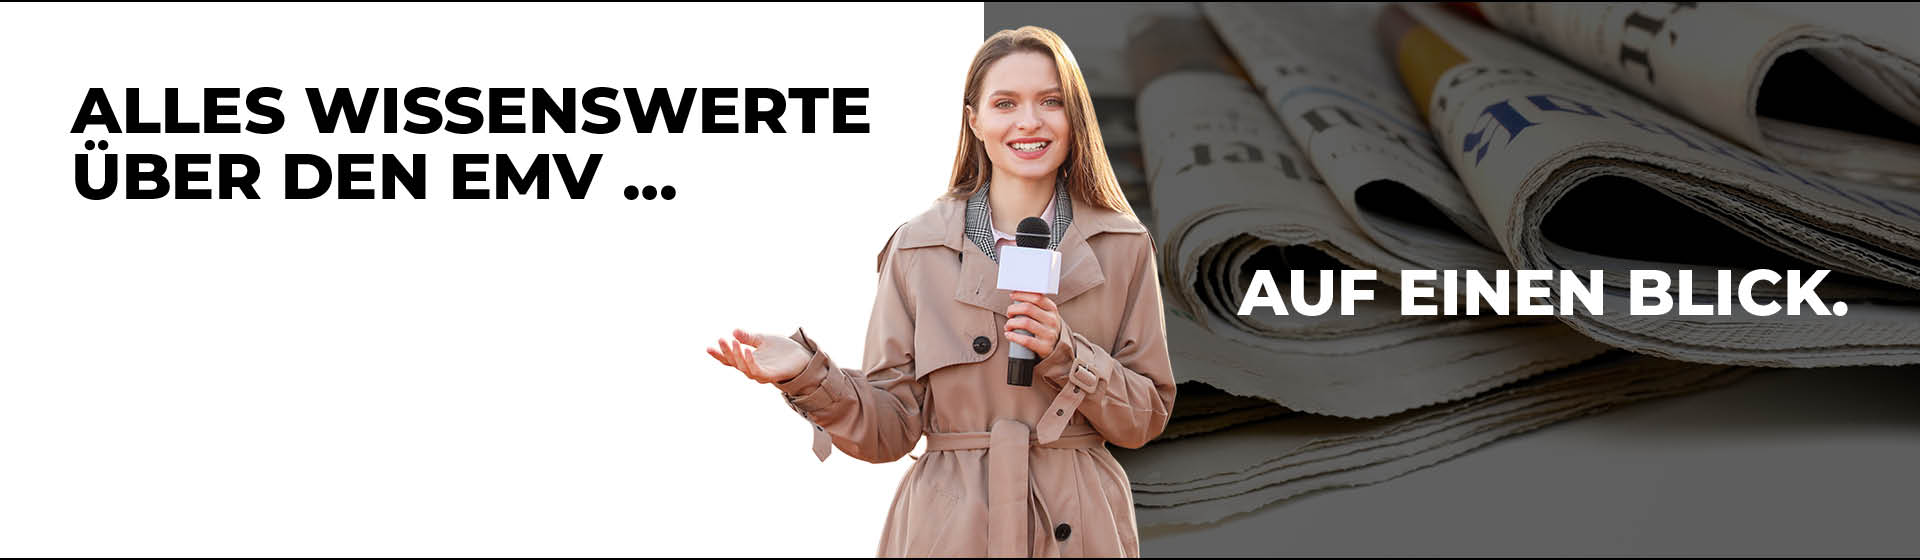 Frau als Reporterin mit einem Mikrofon in der Hand und einem Regenmantel an, Text